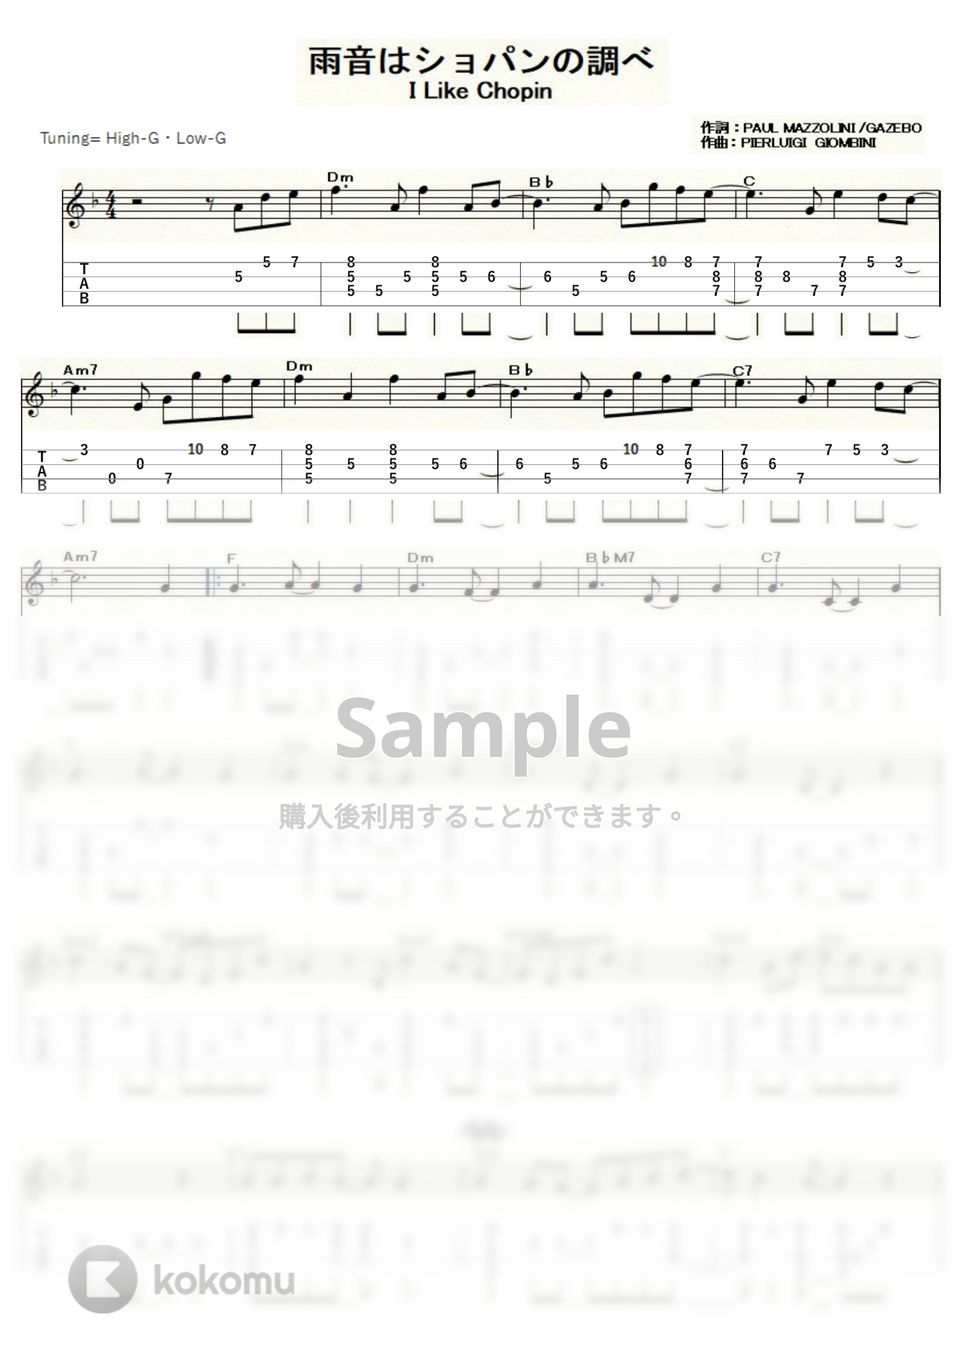 小林麻美 - 雨音はショパンの調べ (ｳｸﾚﾚｿﾛ / High-G・Low-G / 中級) by ukulelepapa